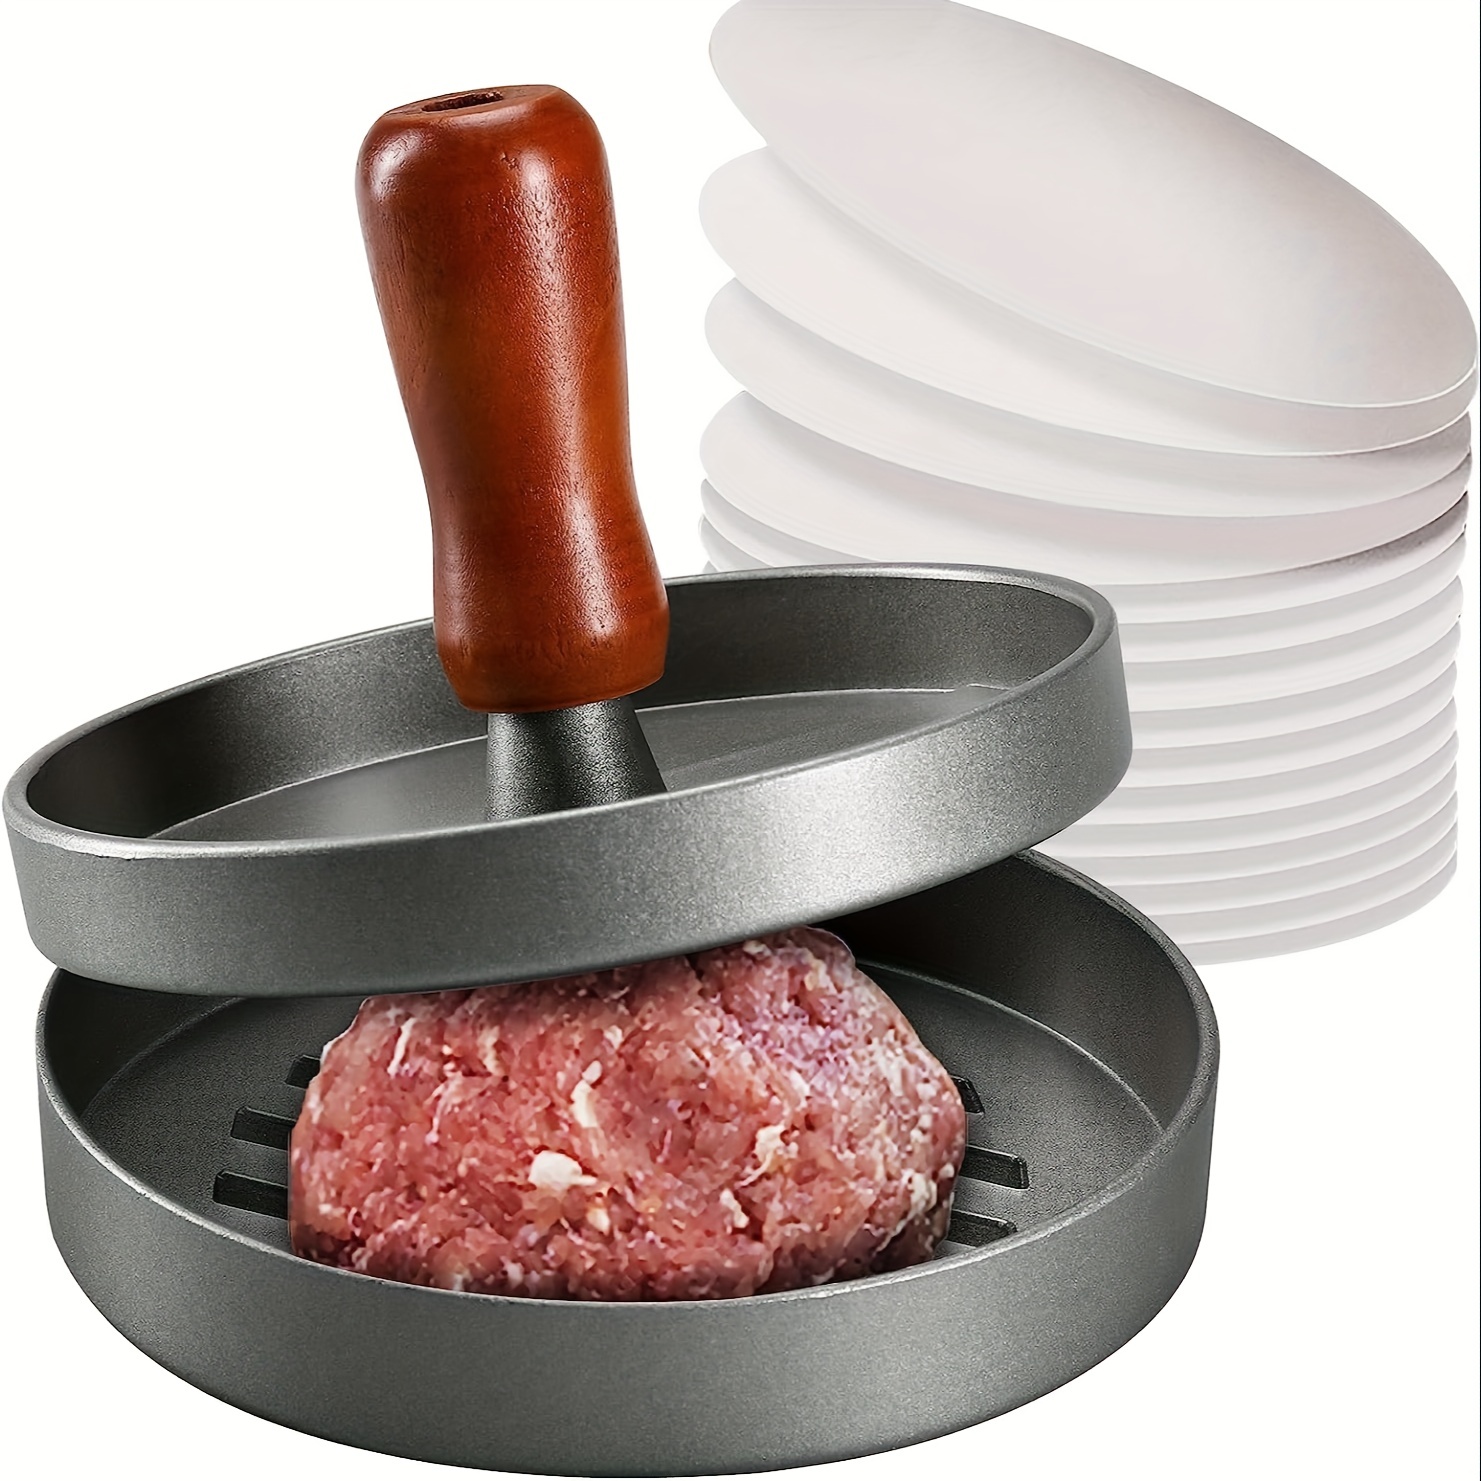 

Un ustensile pour former des hamburgers avec un manche en bois et un revêtement antiadhésif, idéal pour préparer des steaks hachés maison de manière créative.